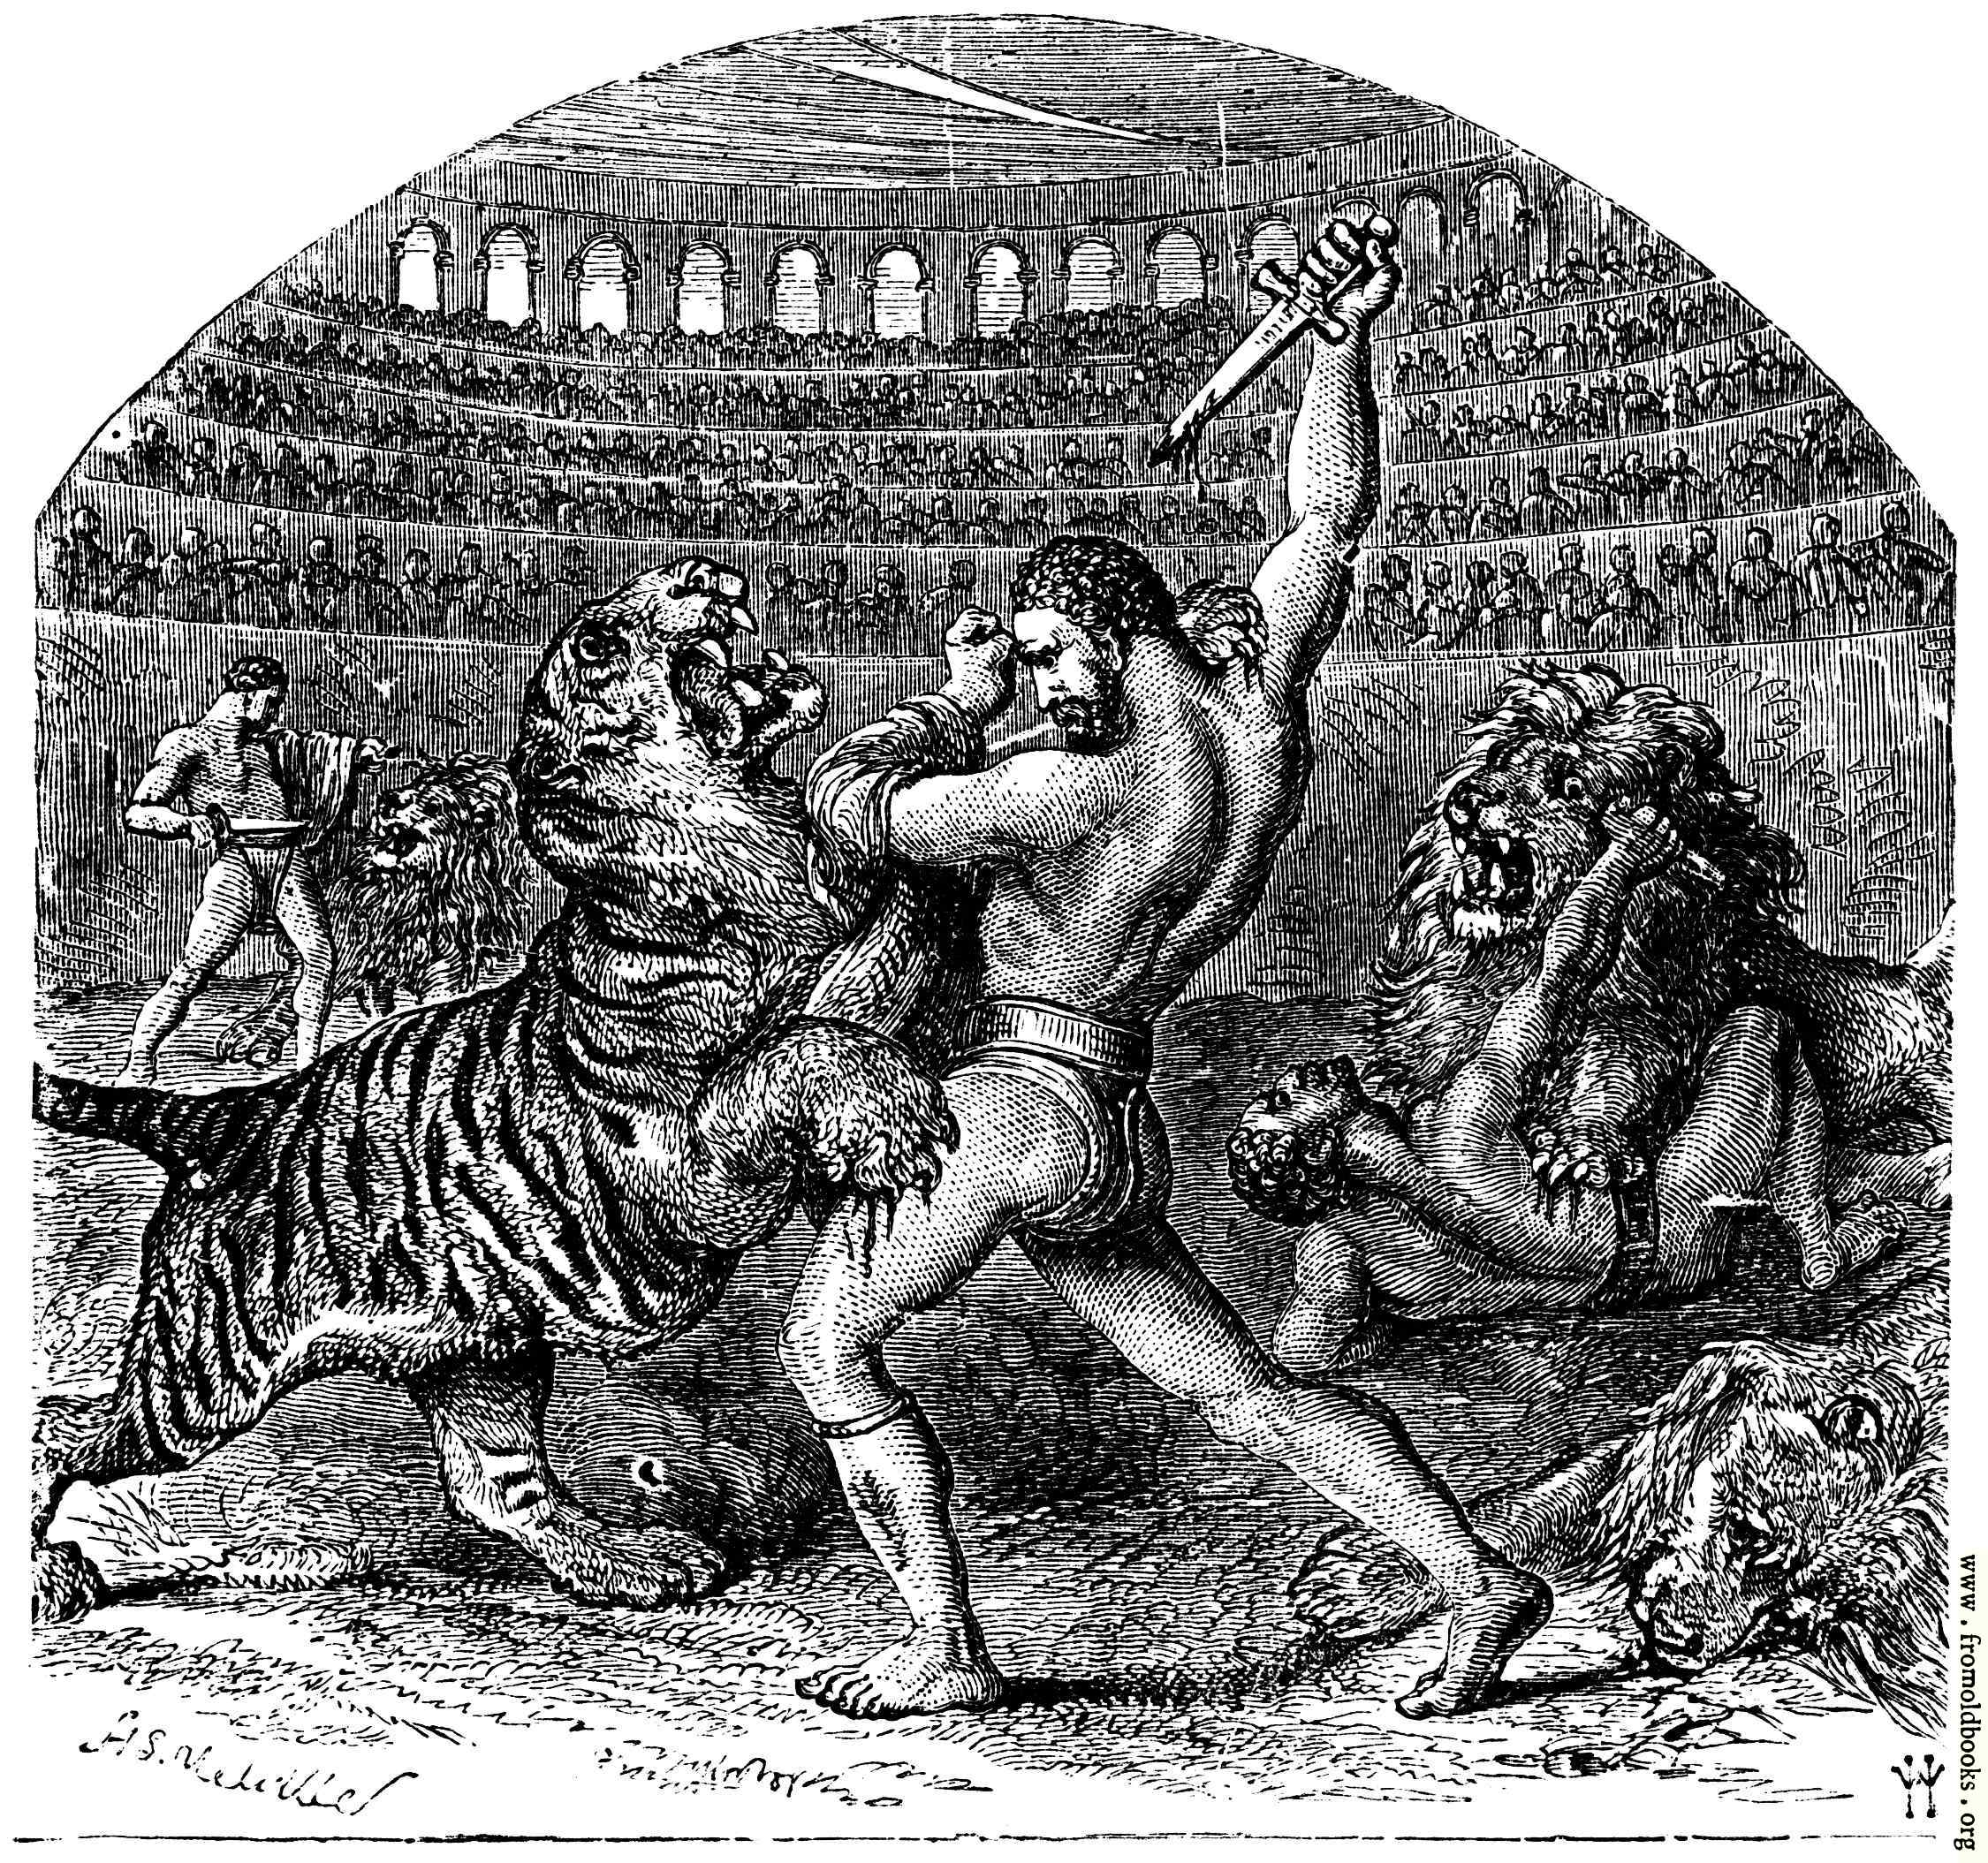 FOBO - Combat of Gladiators with Wild Animals